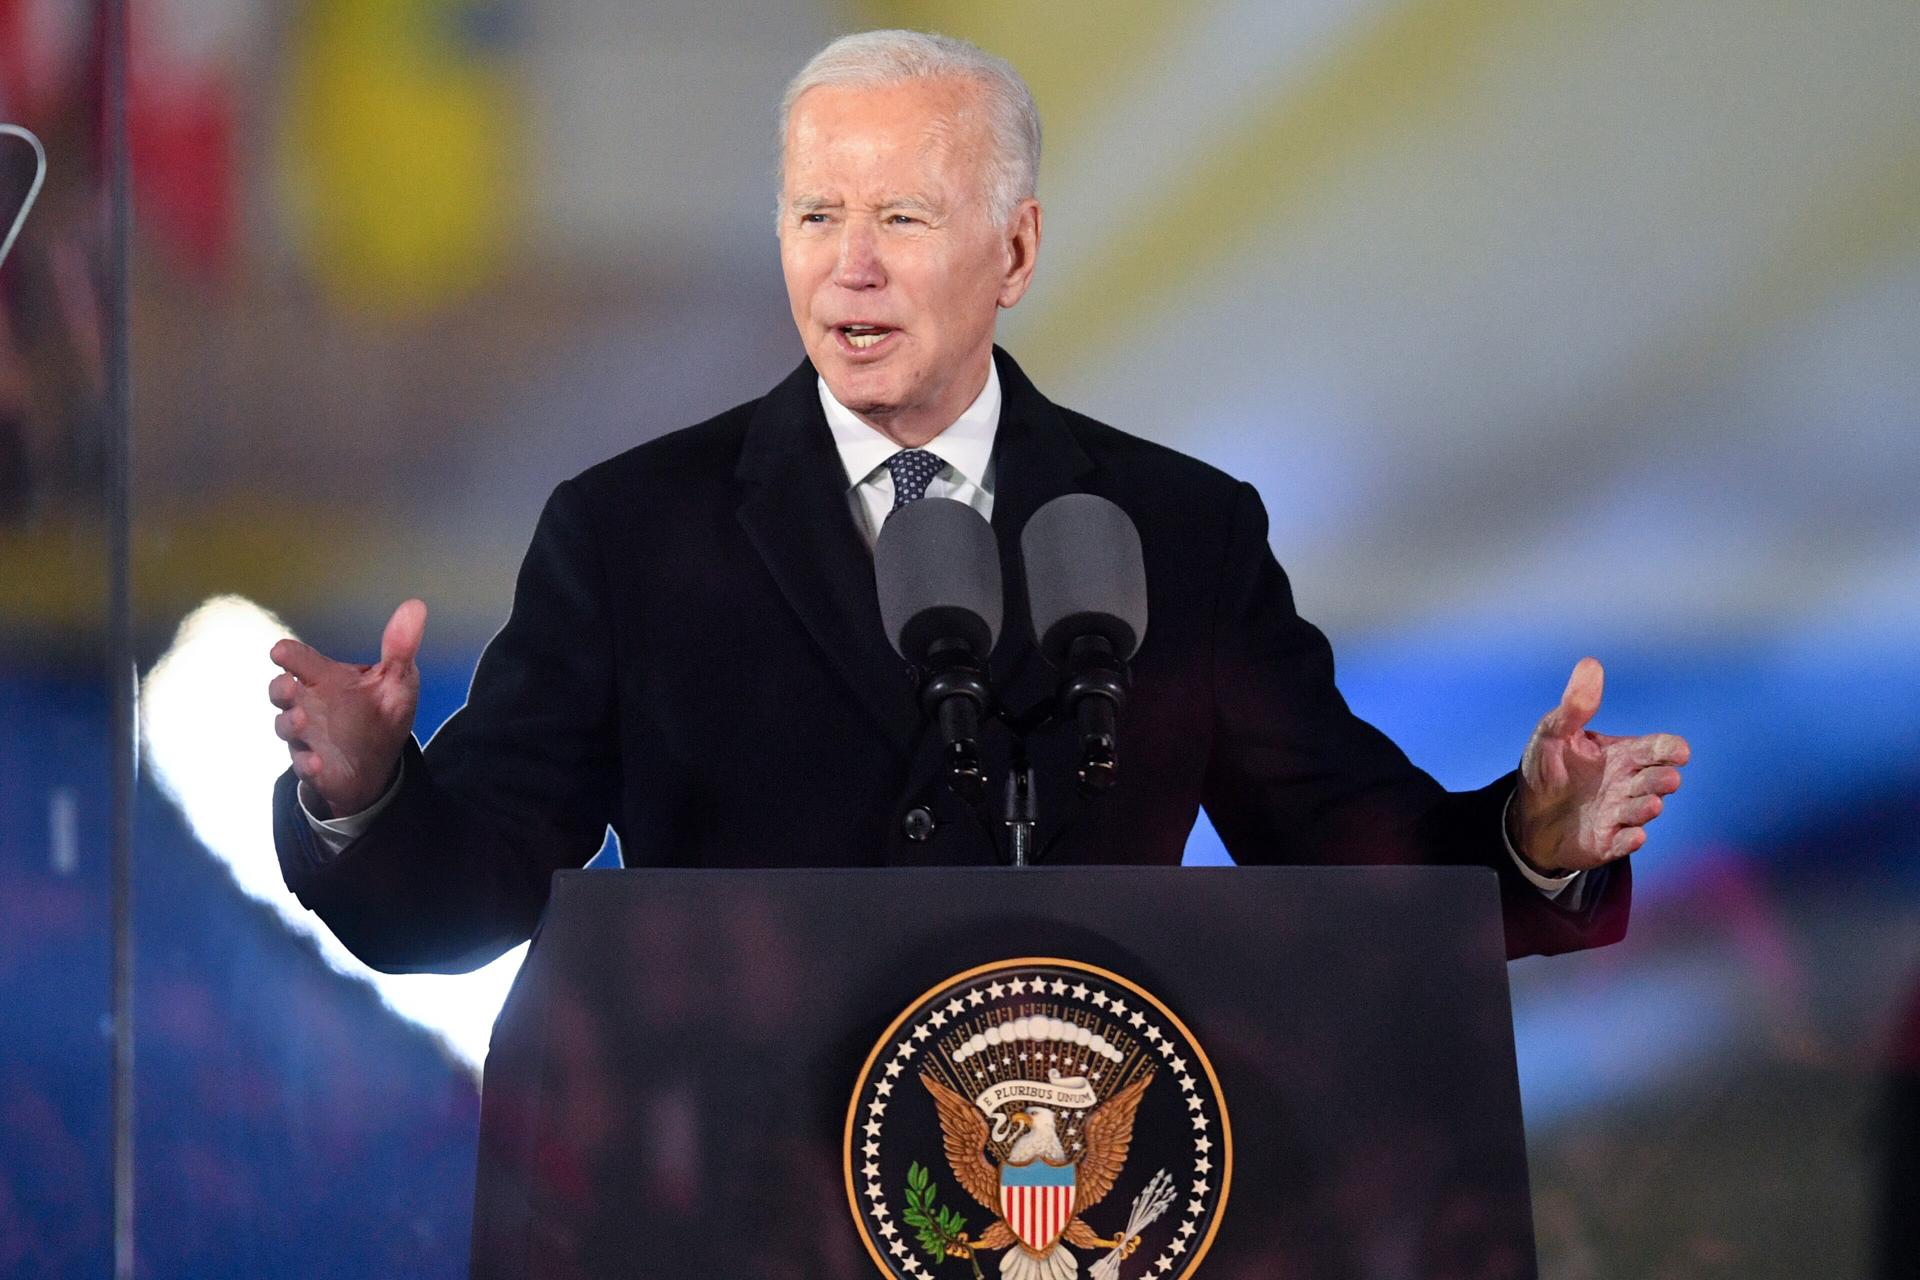 Biden asegura que Putin ha cometido un “gran error” con la suspensión de tratado nuclear